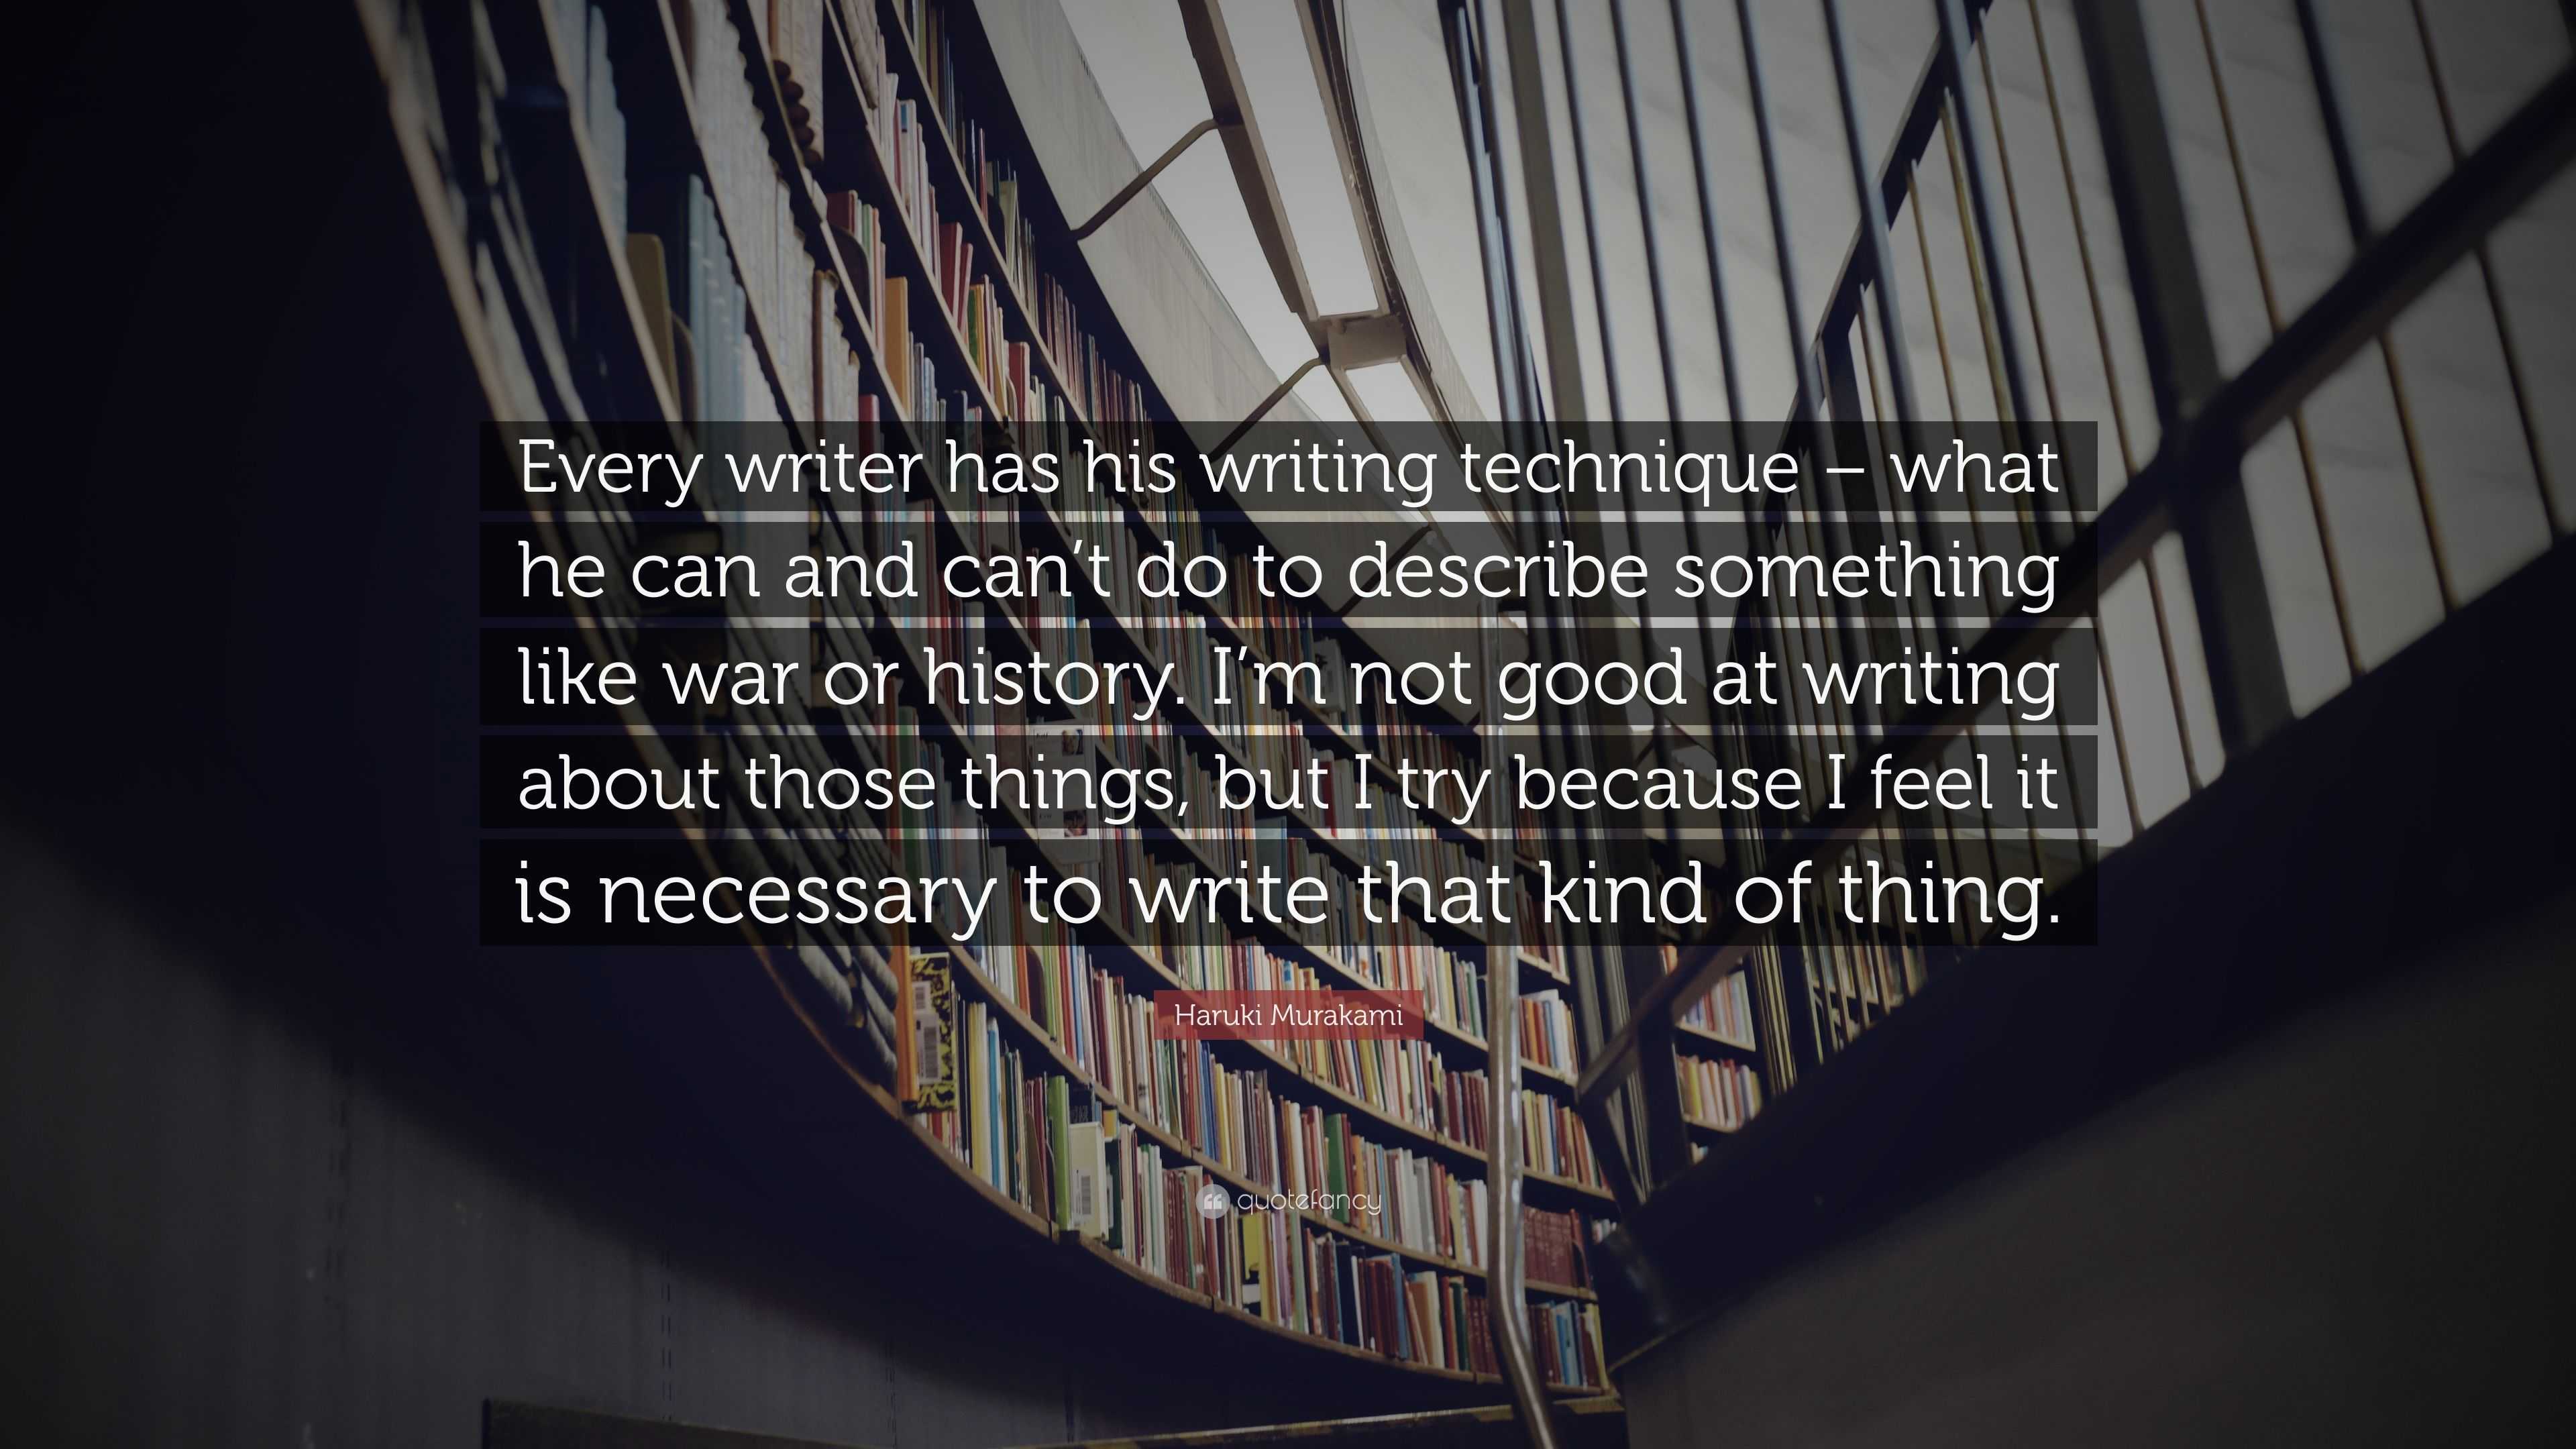 Haruki Murakami Quote: “Every writer has his writing technique